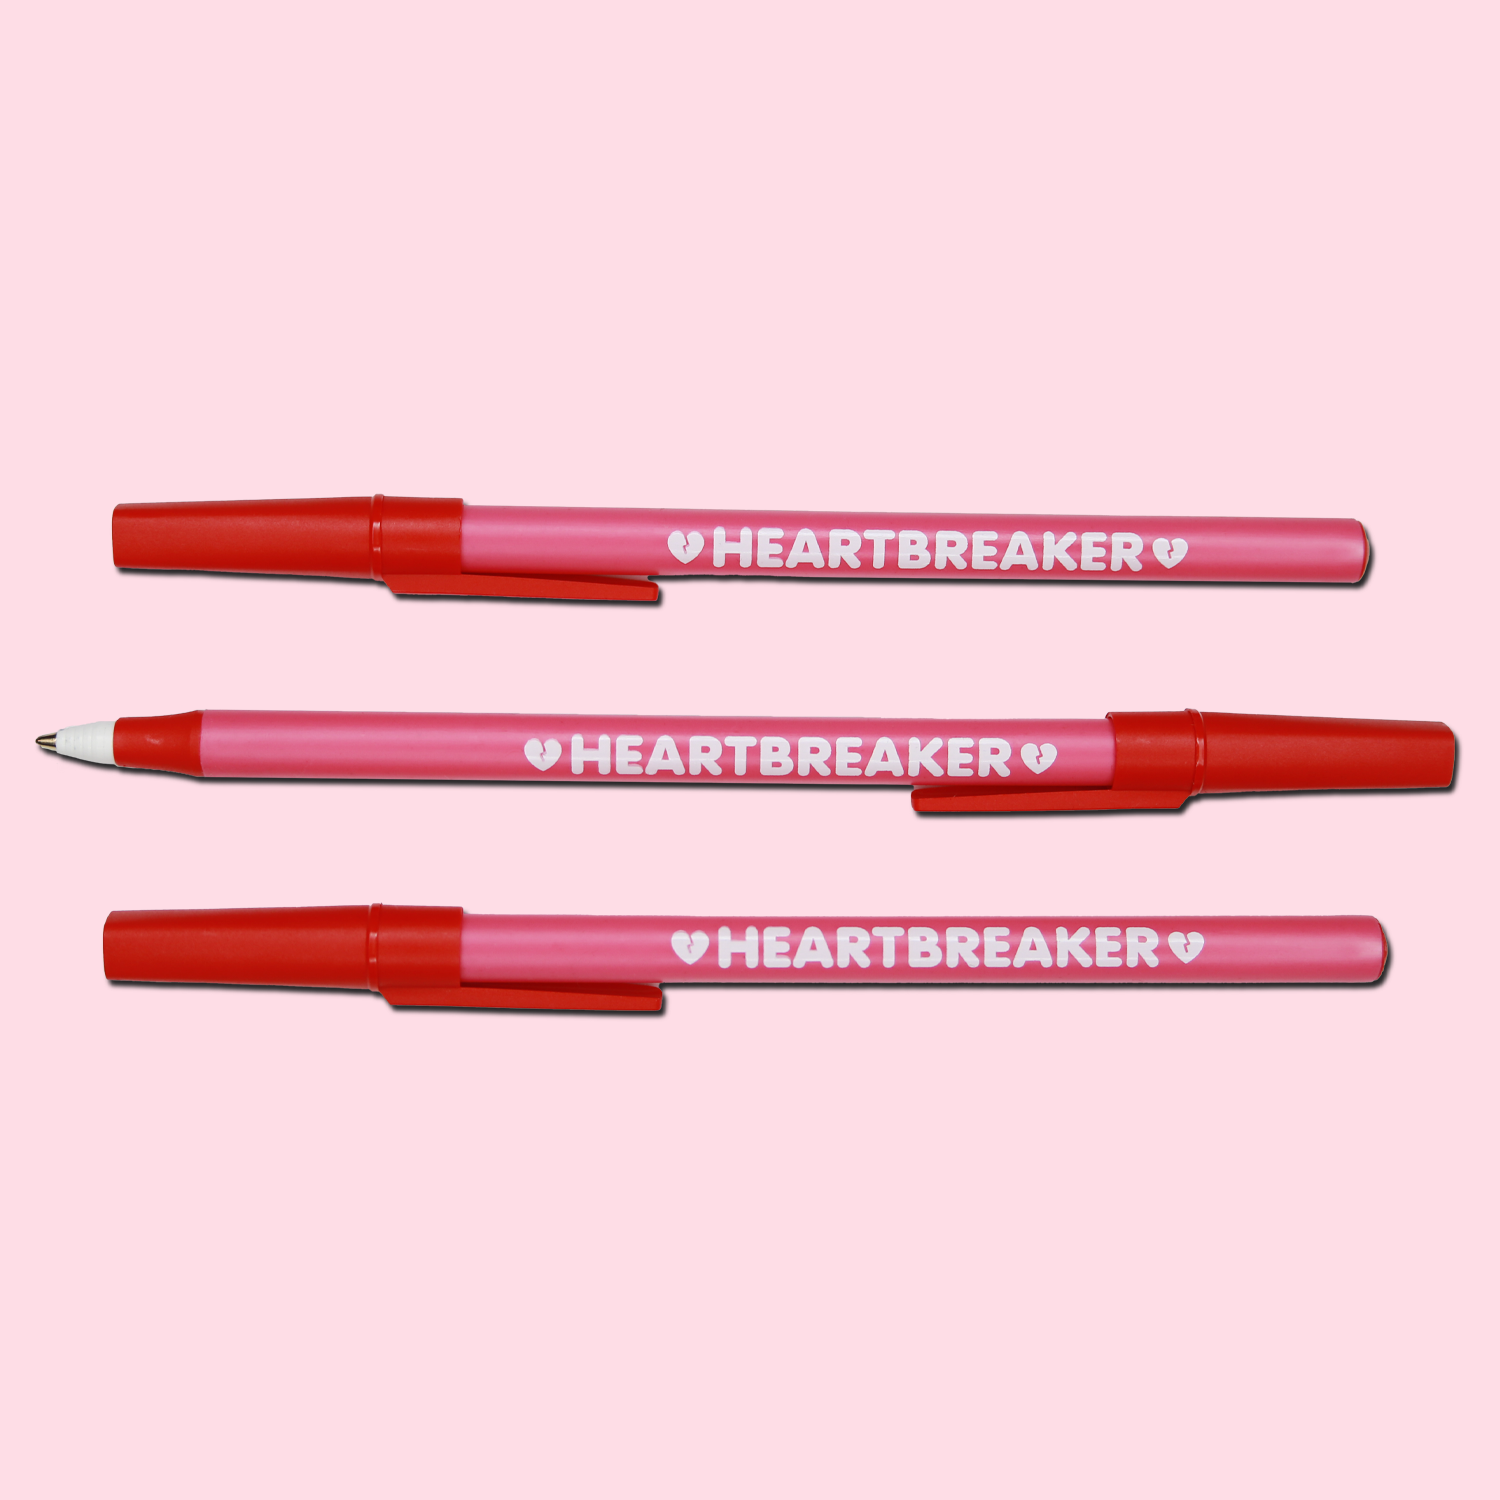 Heartbreaker Pen